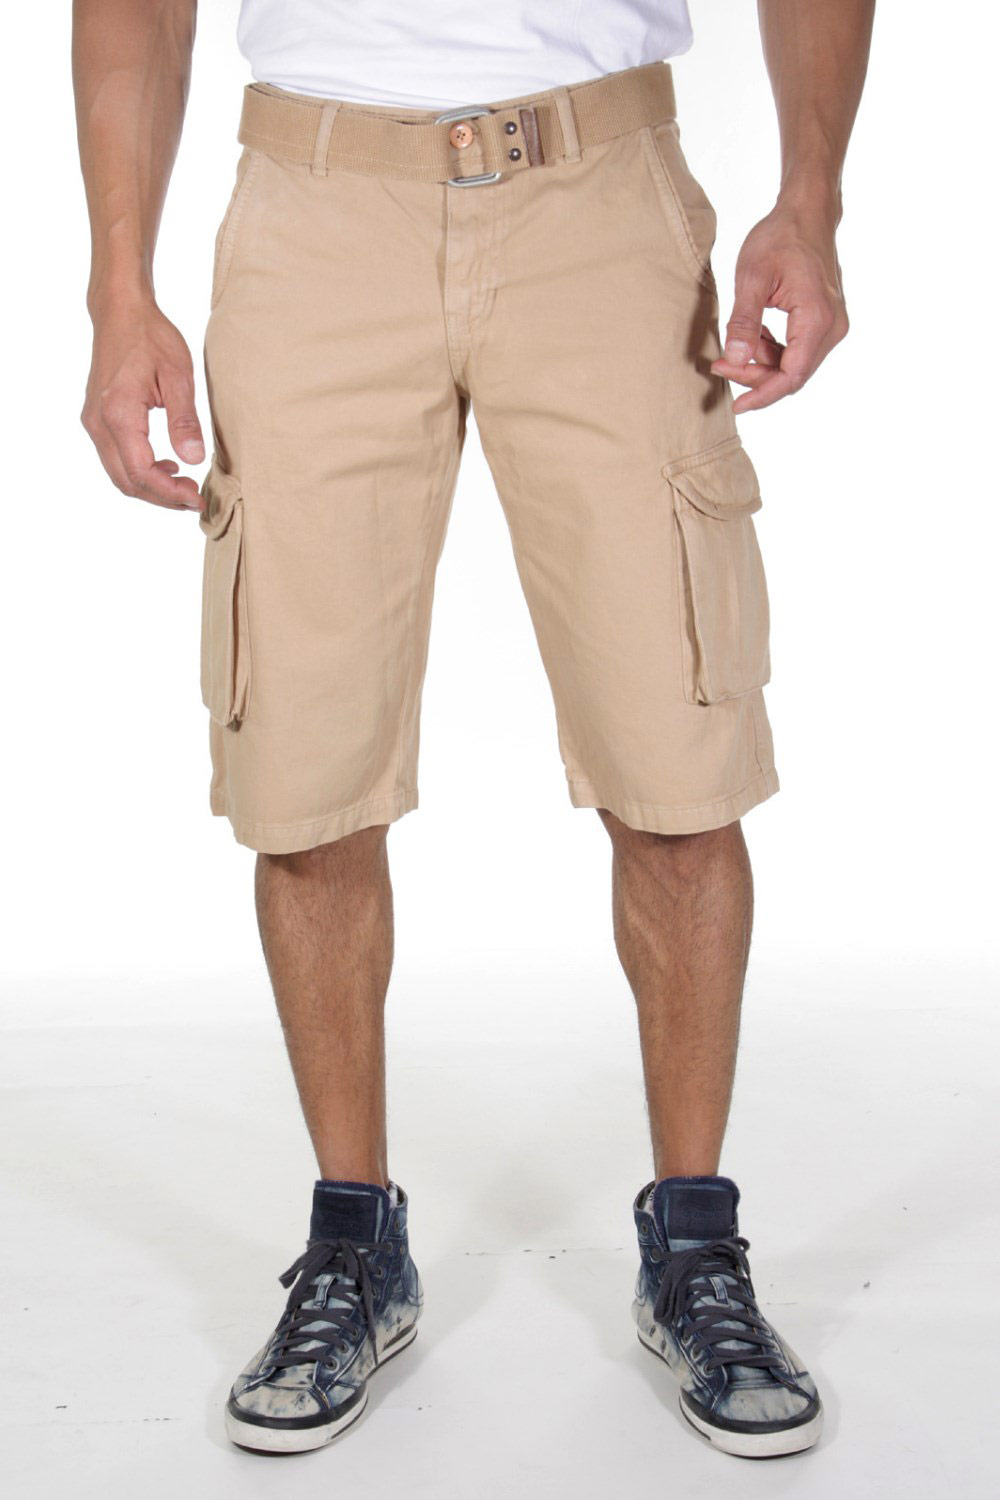 MEN LIFE shorts at oboy.com